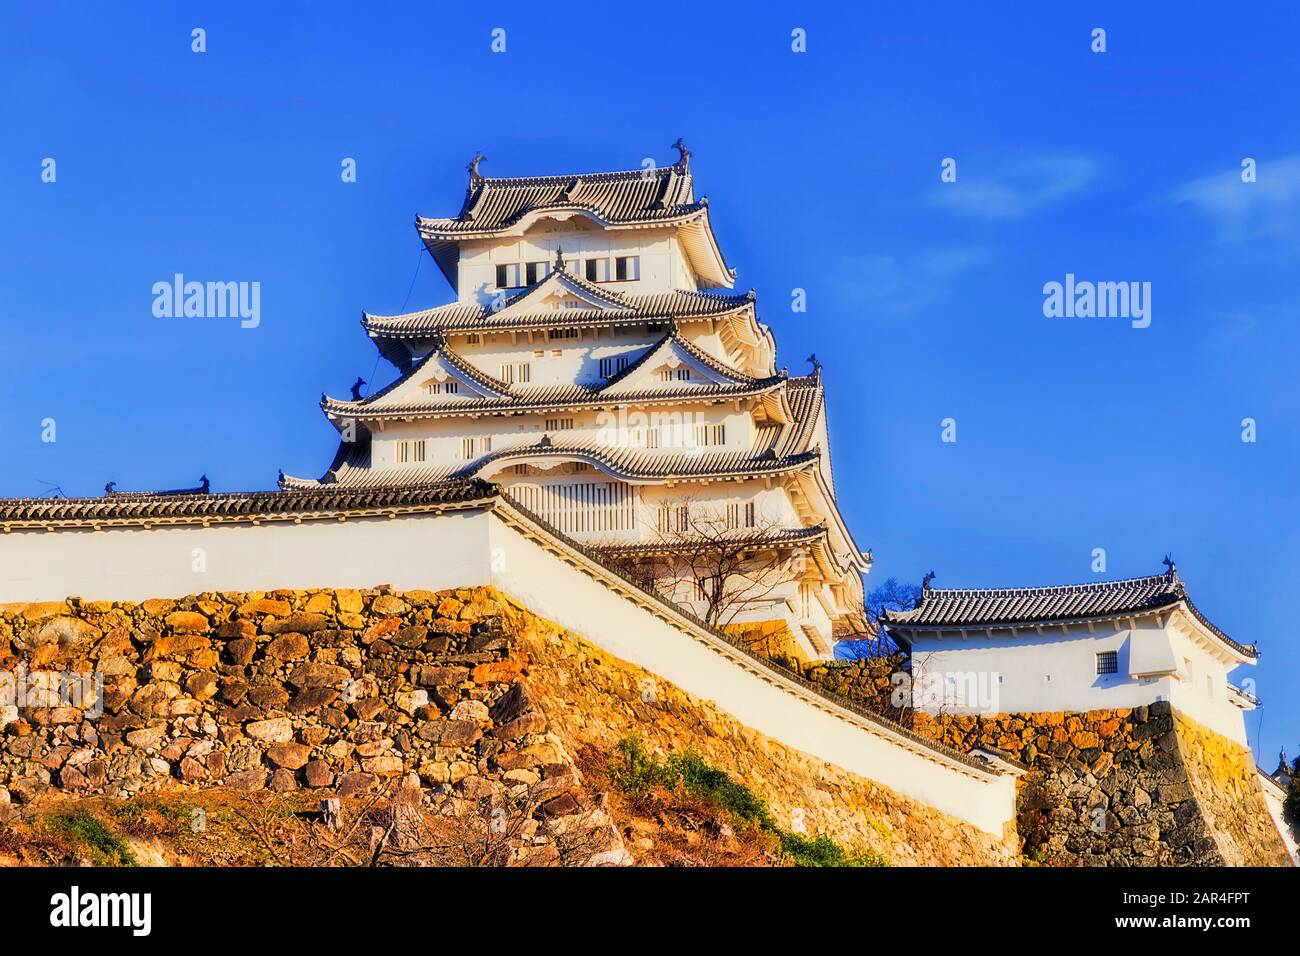 Complexe architectural historique du château de shogun avec tours blanches et murs en pierre contre le ciel bleu au Japon. Banque D'Images